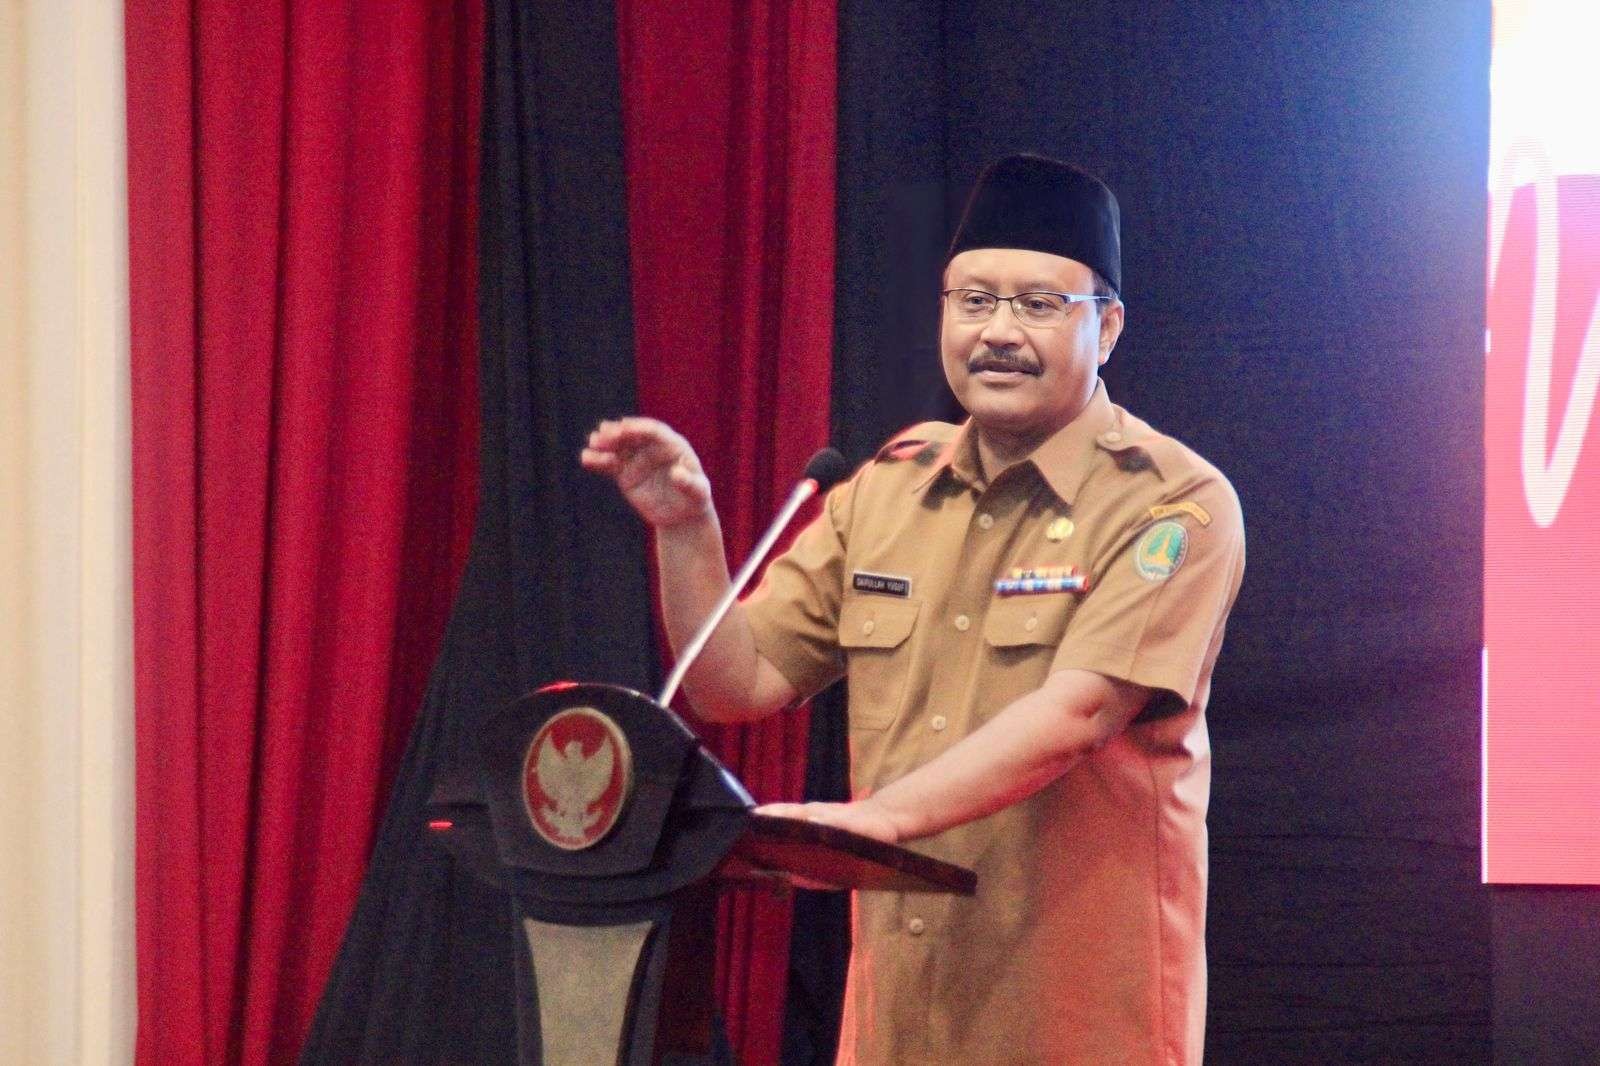 Walikota Pasuruan, Drs. H. Saifullah Yusuf (Gus Ipul) penguatan seni dan budaya merupakan salah satu hal yang tertuang dalam visi Pasuruan Kota Madinah. (Foto: Dokumentas Kota Pasuruan)